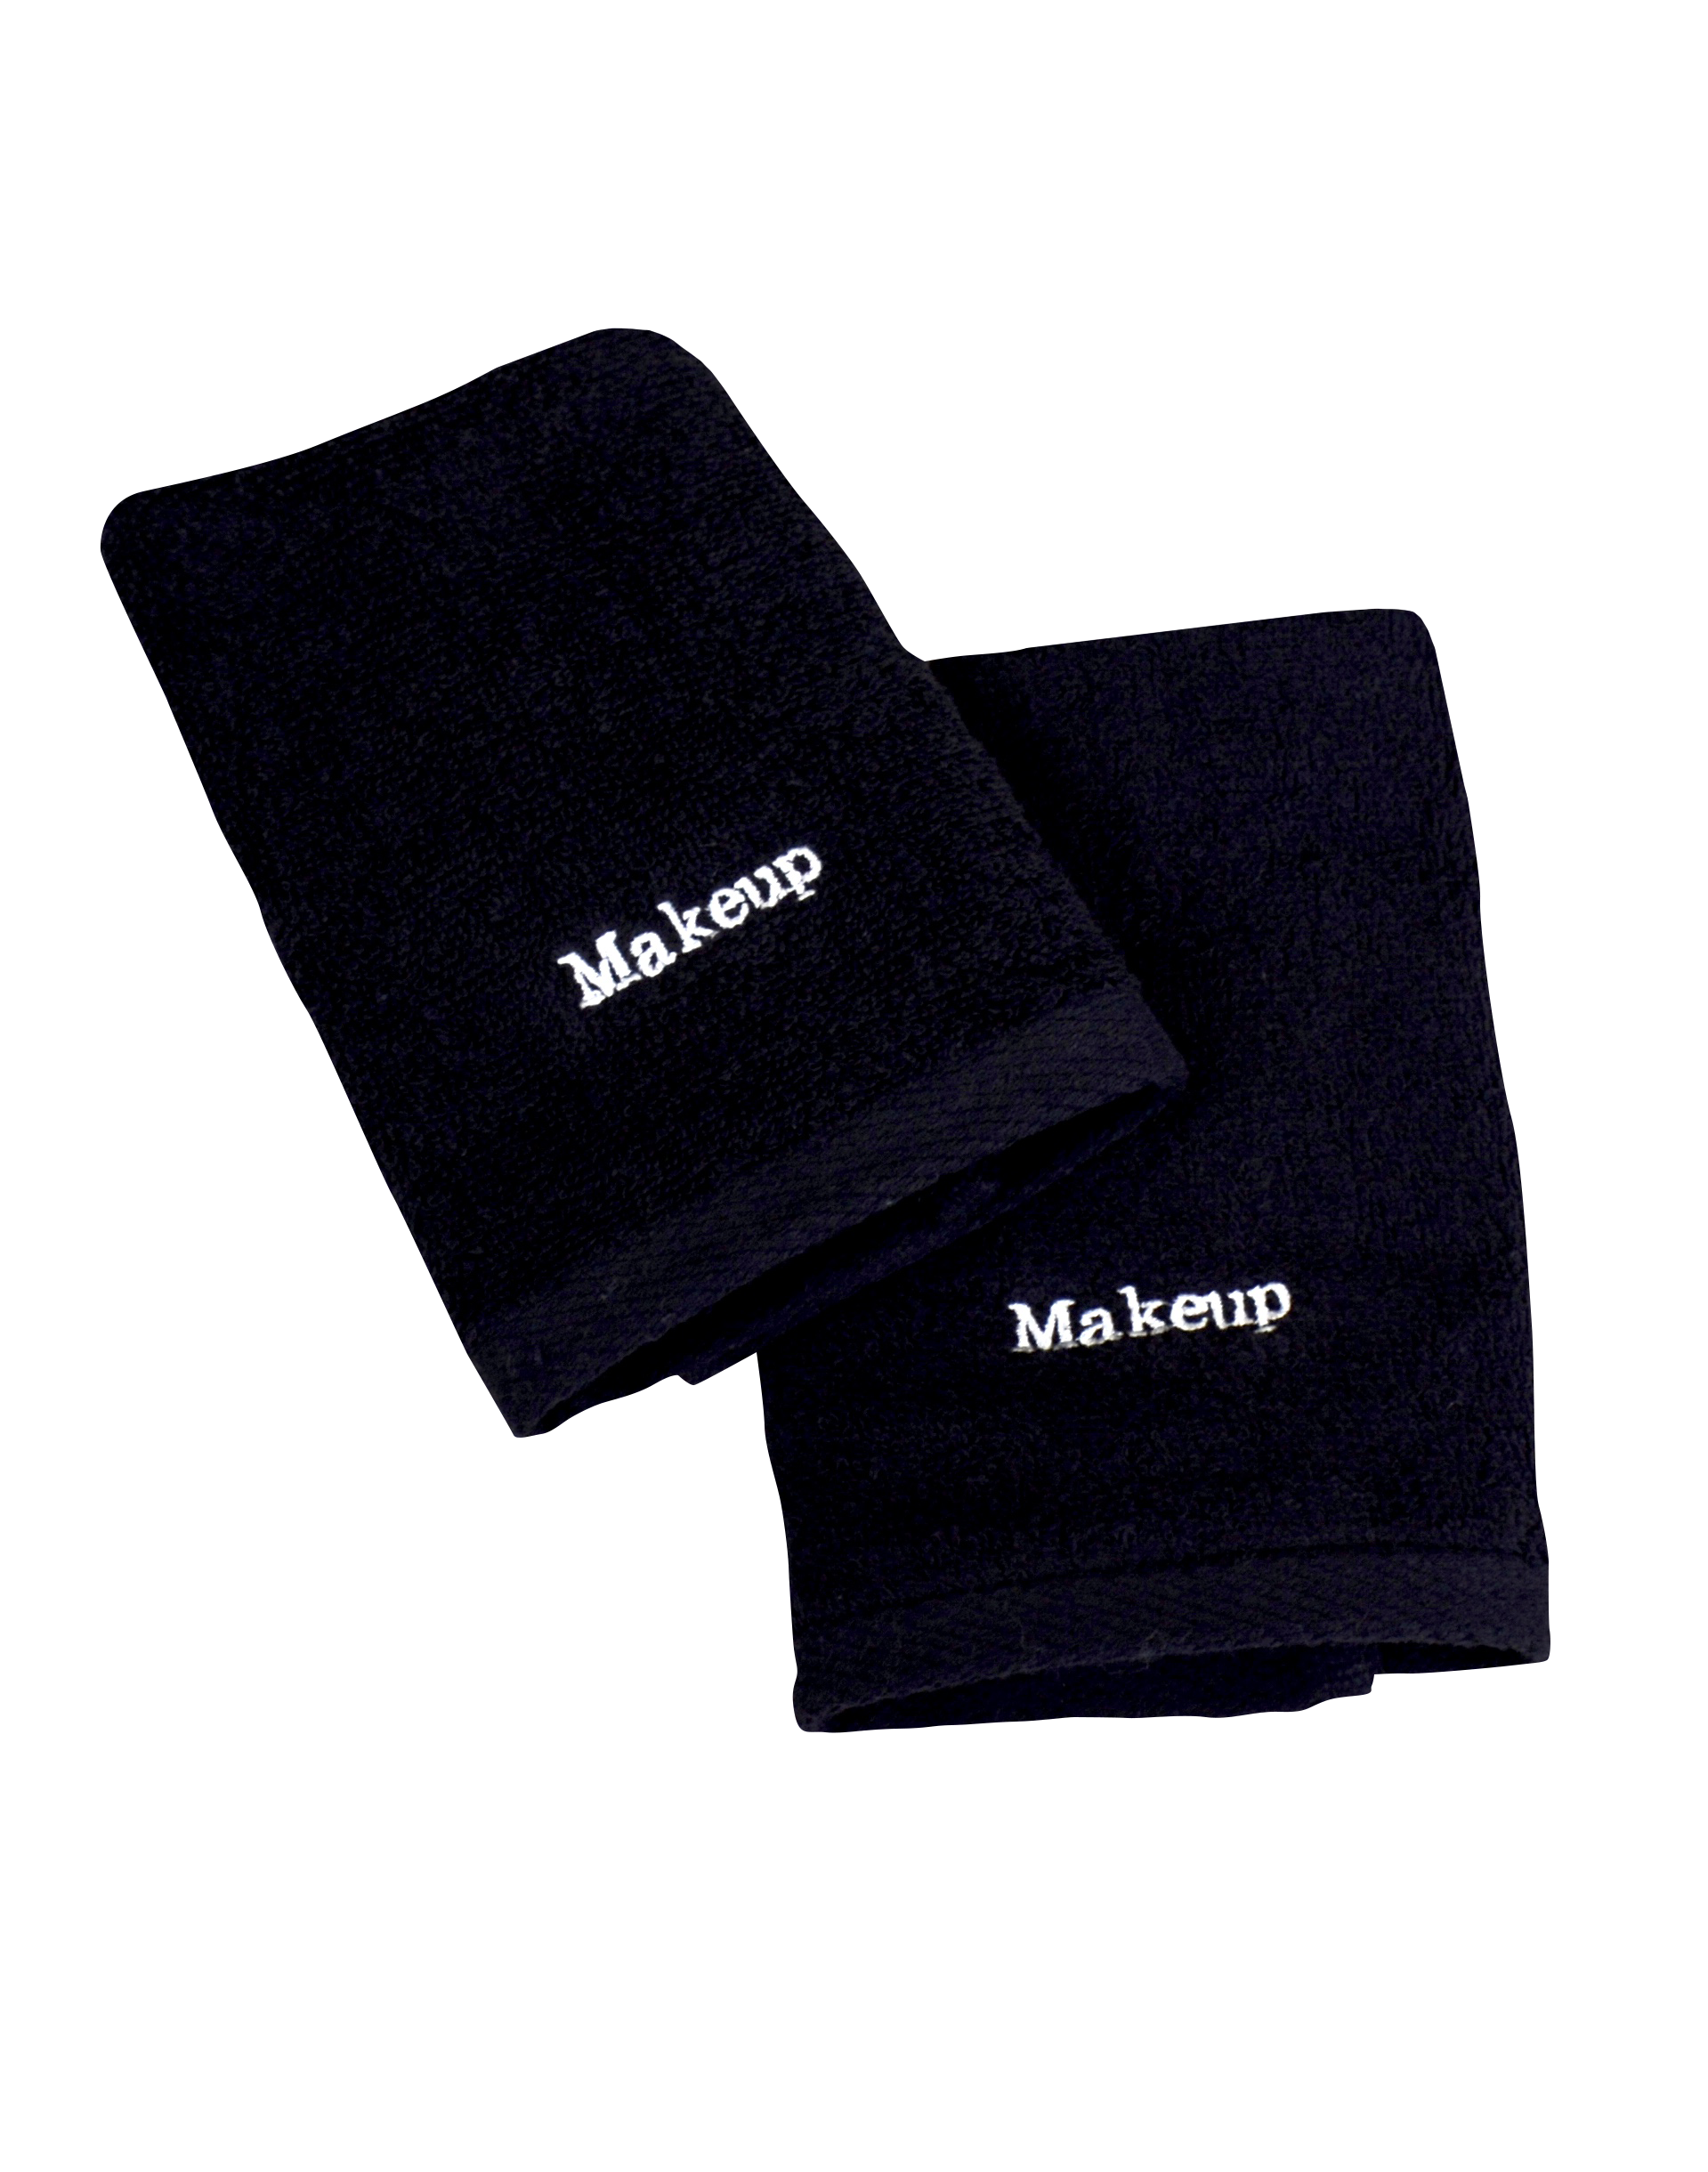 Black Make Up Washcloths, Set of 2